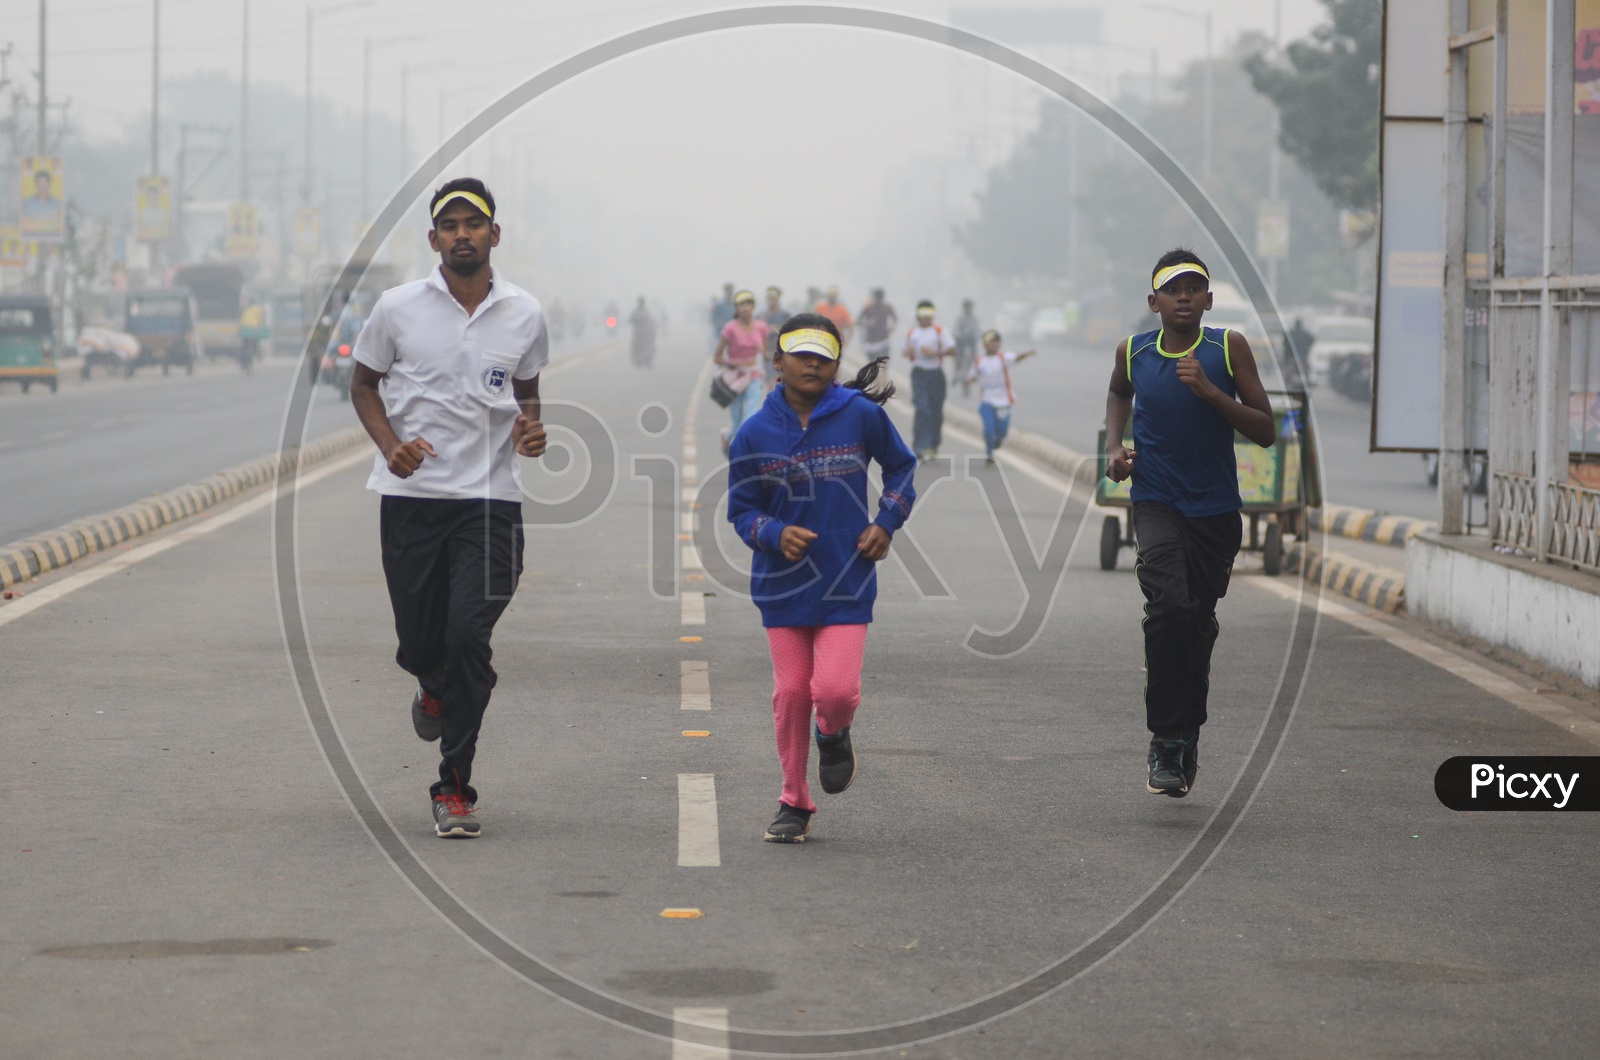 Janmabhoomi 5k run 2019